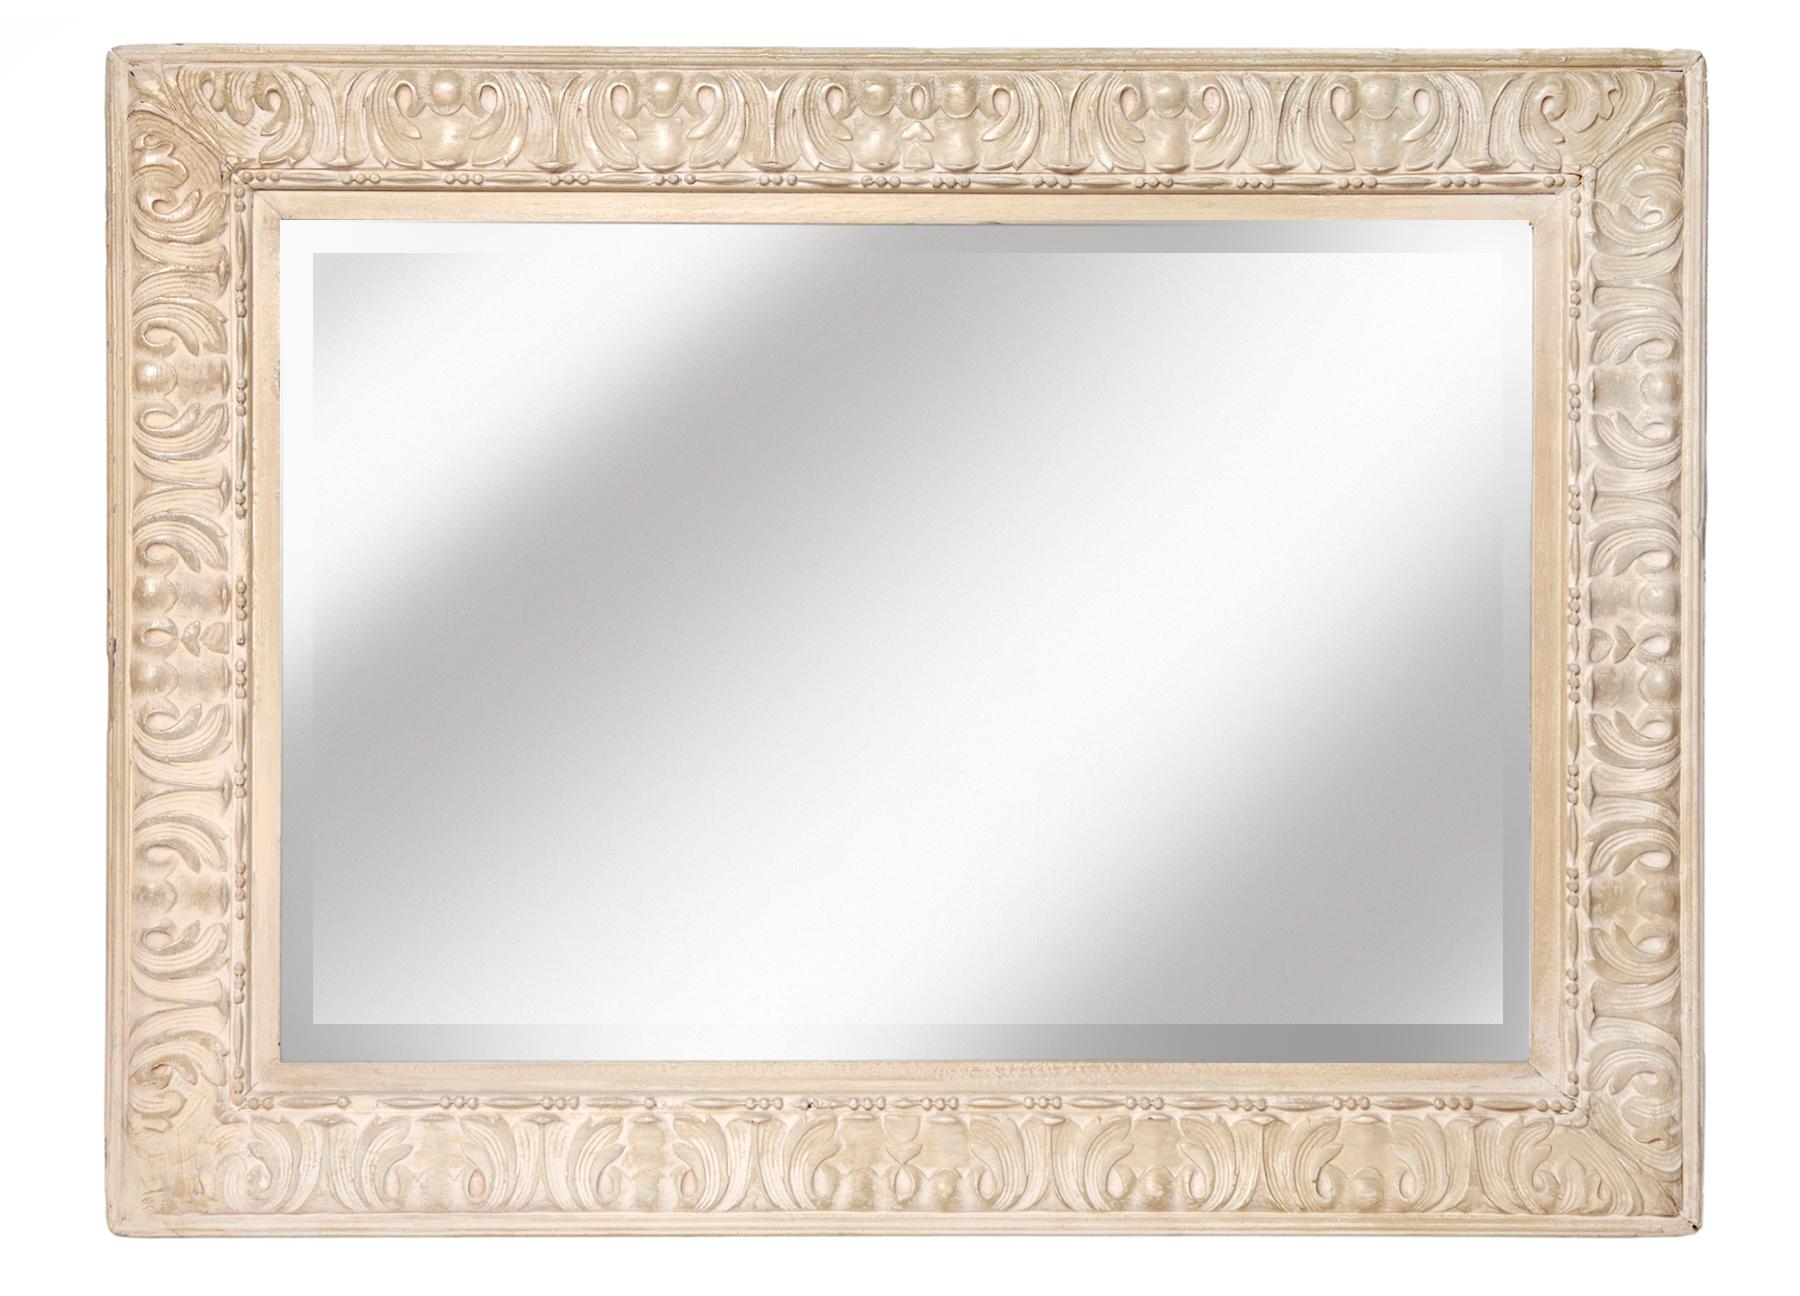 Miroir biseauté encadré de bois dur peint. La peinture lustrée est polie sur de multiples nuances de blanc cassé. Le verre biseauté semble être d'origine. Le miroir a un nouveau support et a été recâblé pour être suspendu horizontalement ou